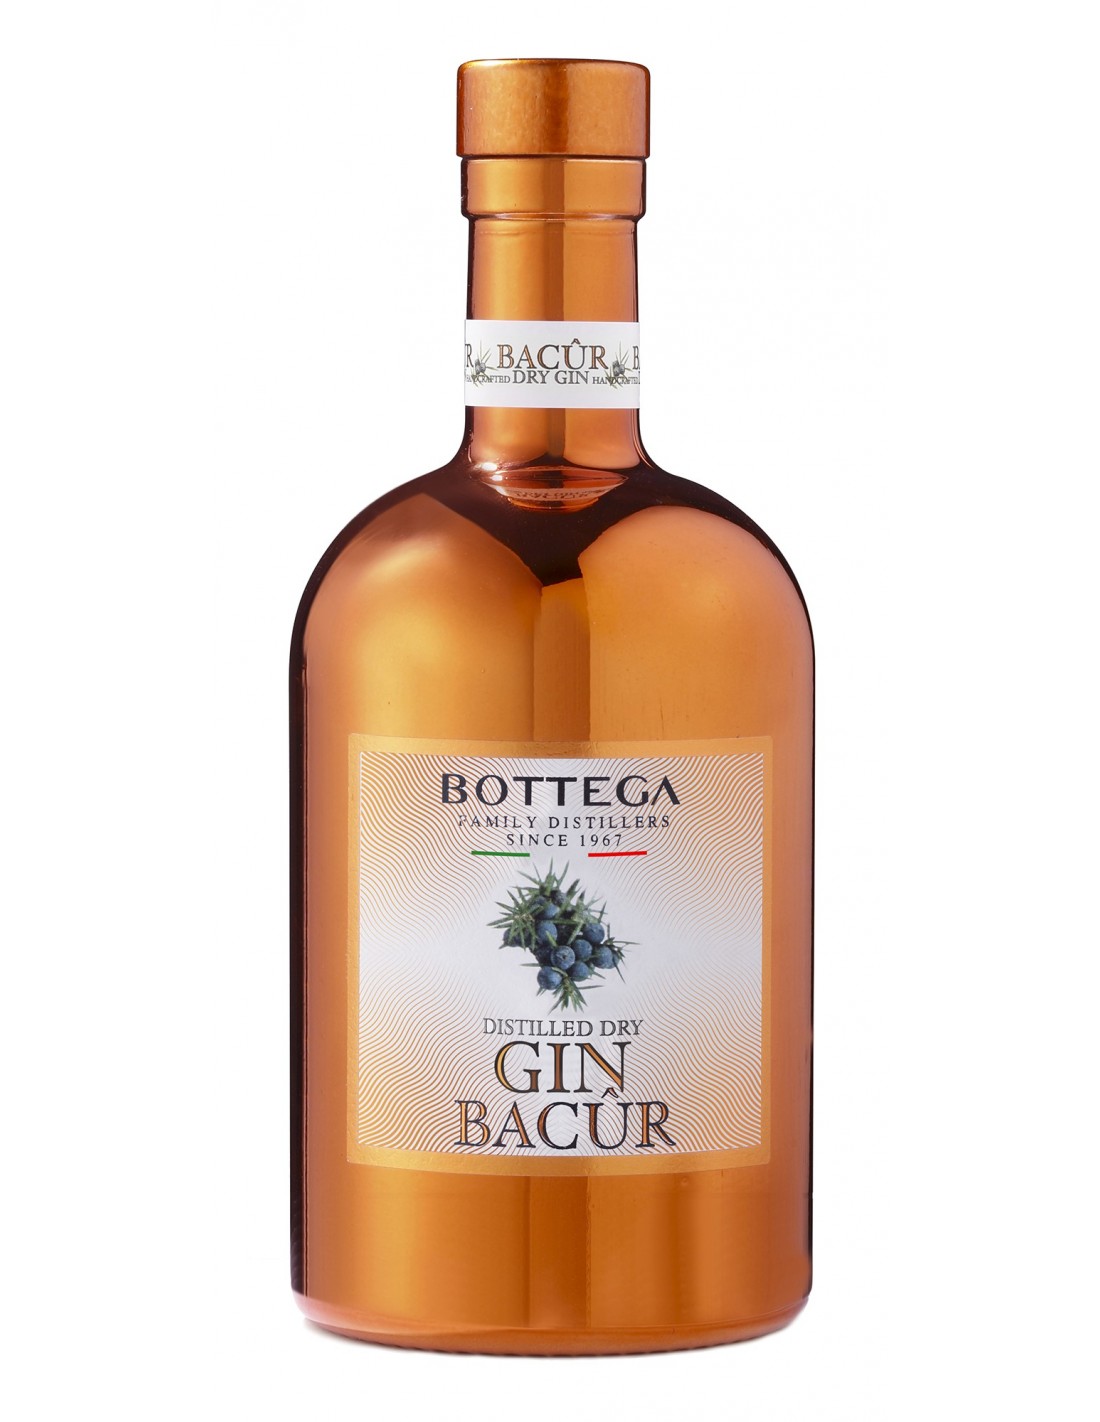 Gin Bottega Bacur, 40% alc., 0.7L, Italia